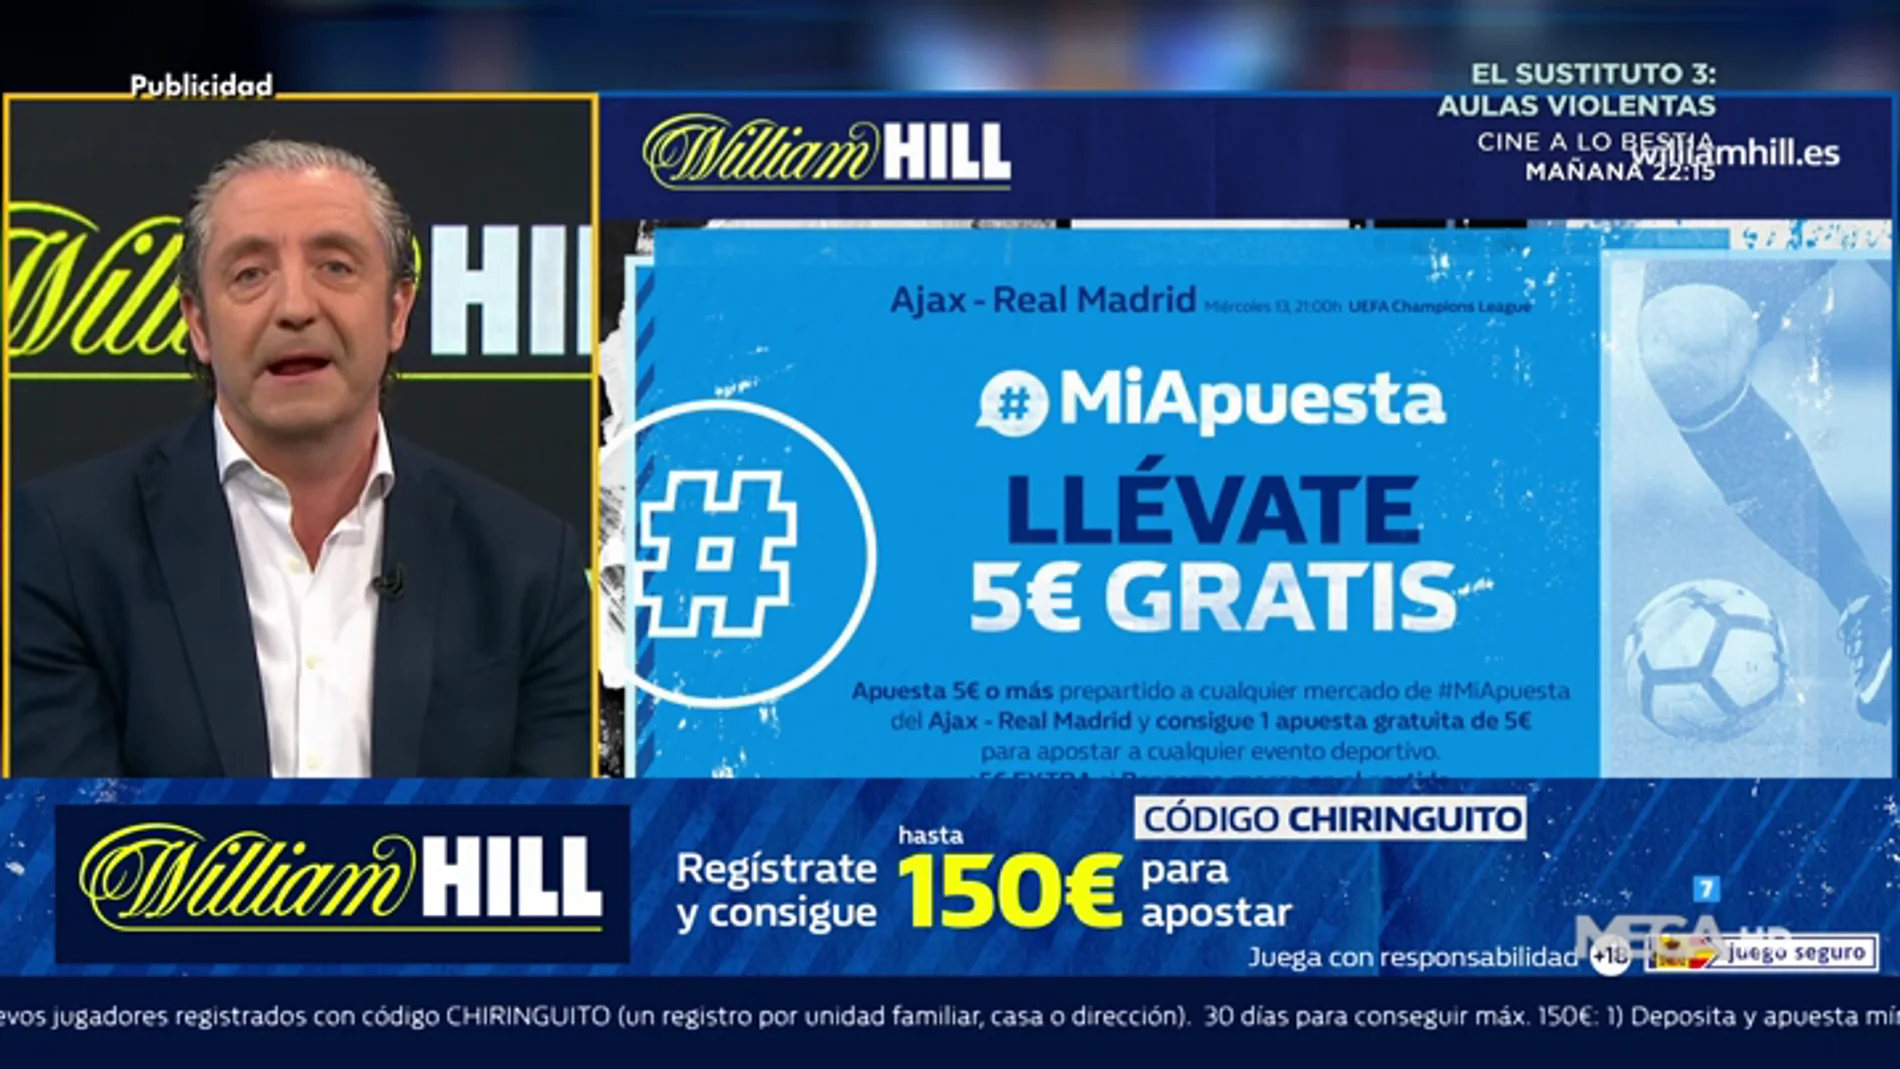  Josep te trae la mejor oferta de registro para que apuestes con William Hill 